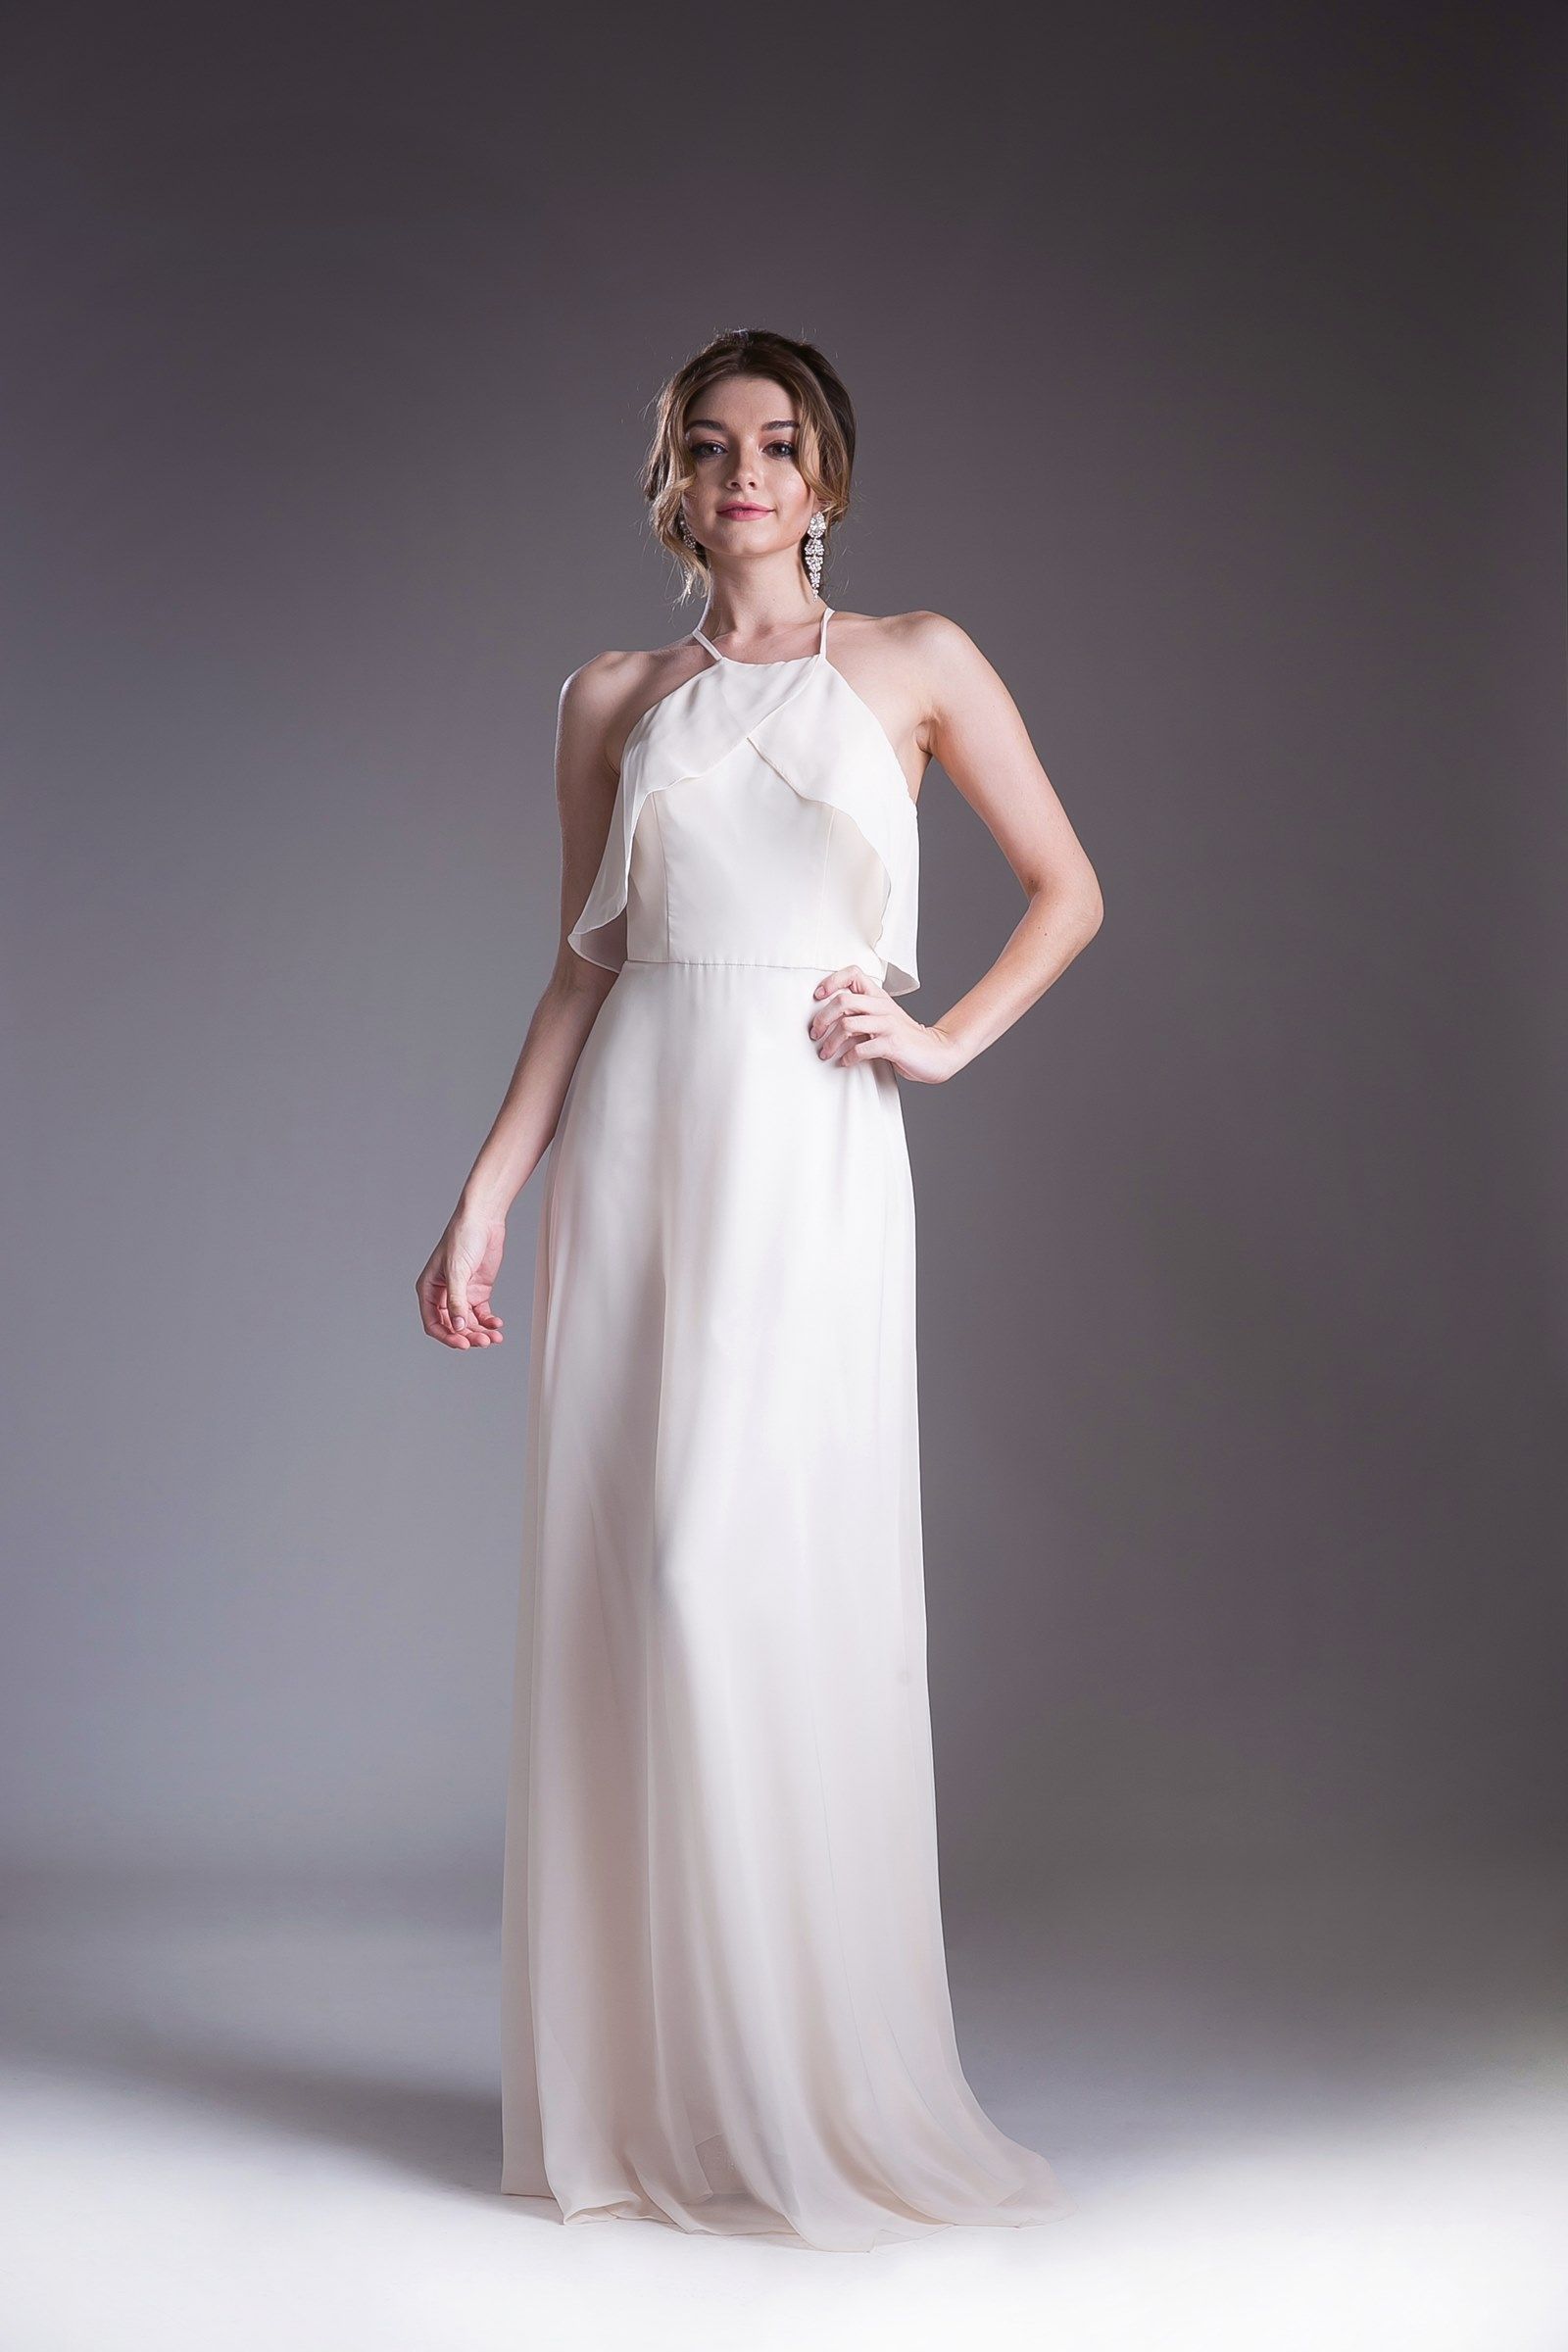 Cinderella Divine -13032 Strapped Halter A-line Dress